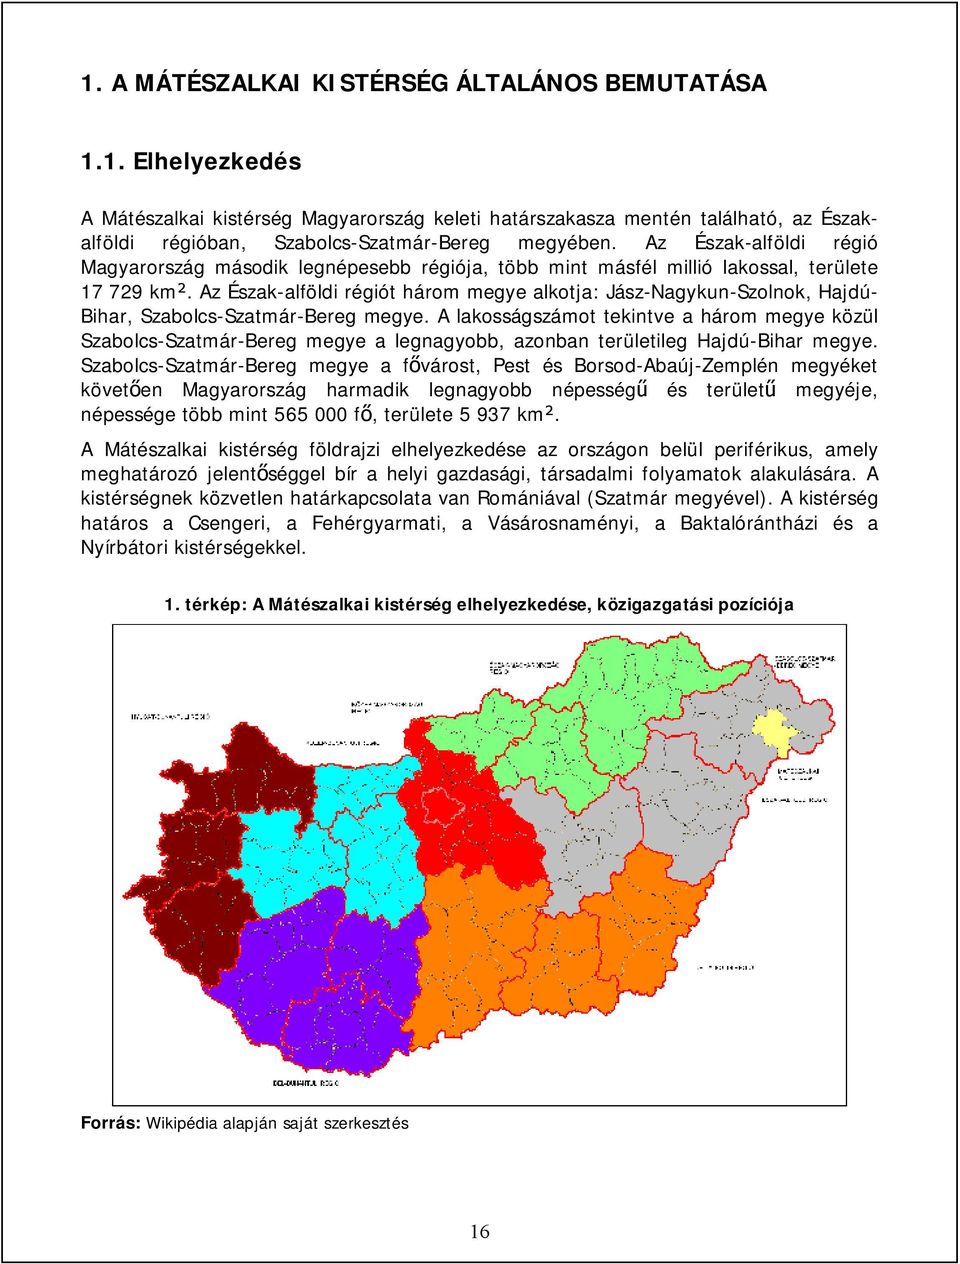 Az Észak-alföldi régiót három megye alkotja: Jász-Nagykun-Szolnok, Hajdú- Bihar, Szabolcs-Szatmár-Bereg megye.